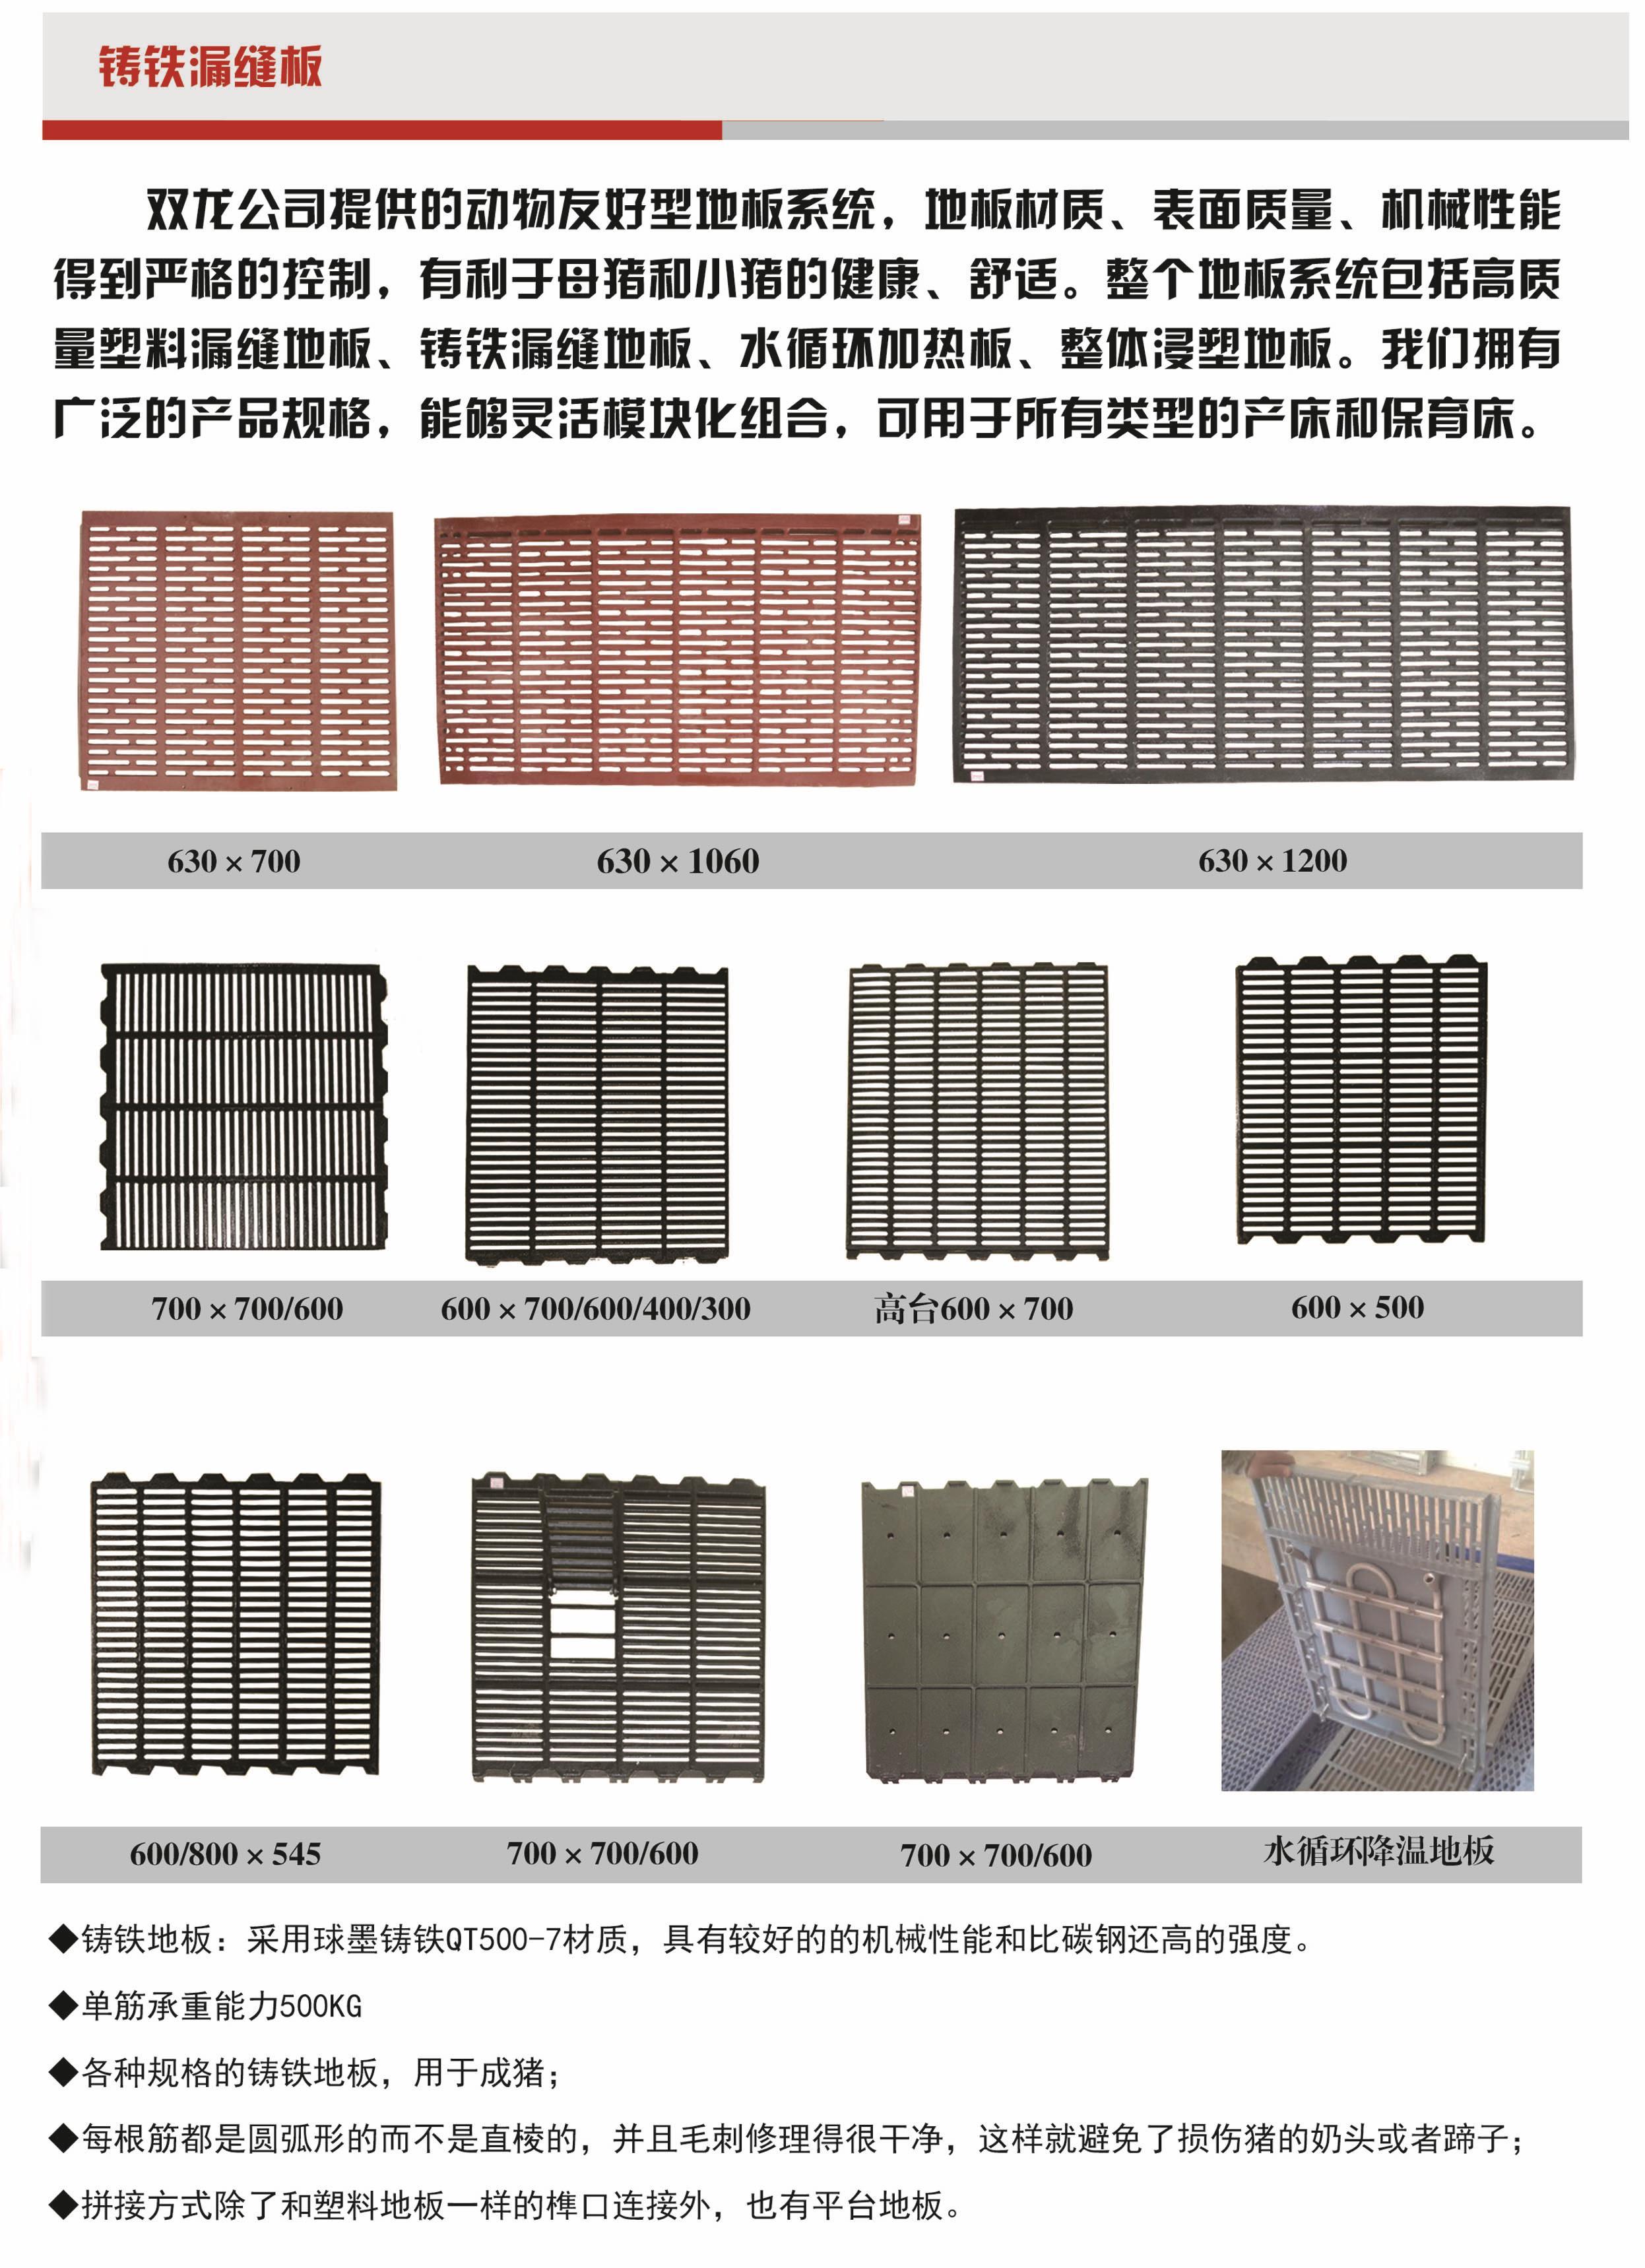 25企业产品篇栏位系统铸铁塑料板副本 拷贝1.jpg